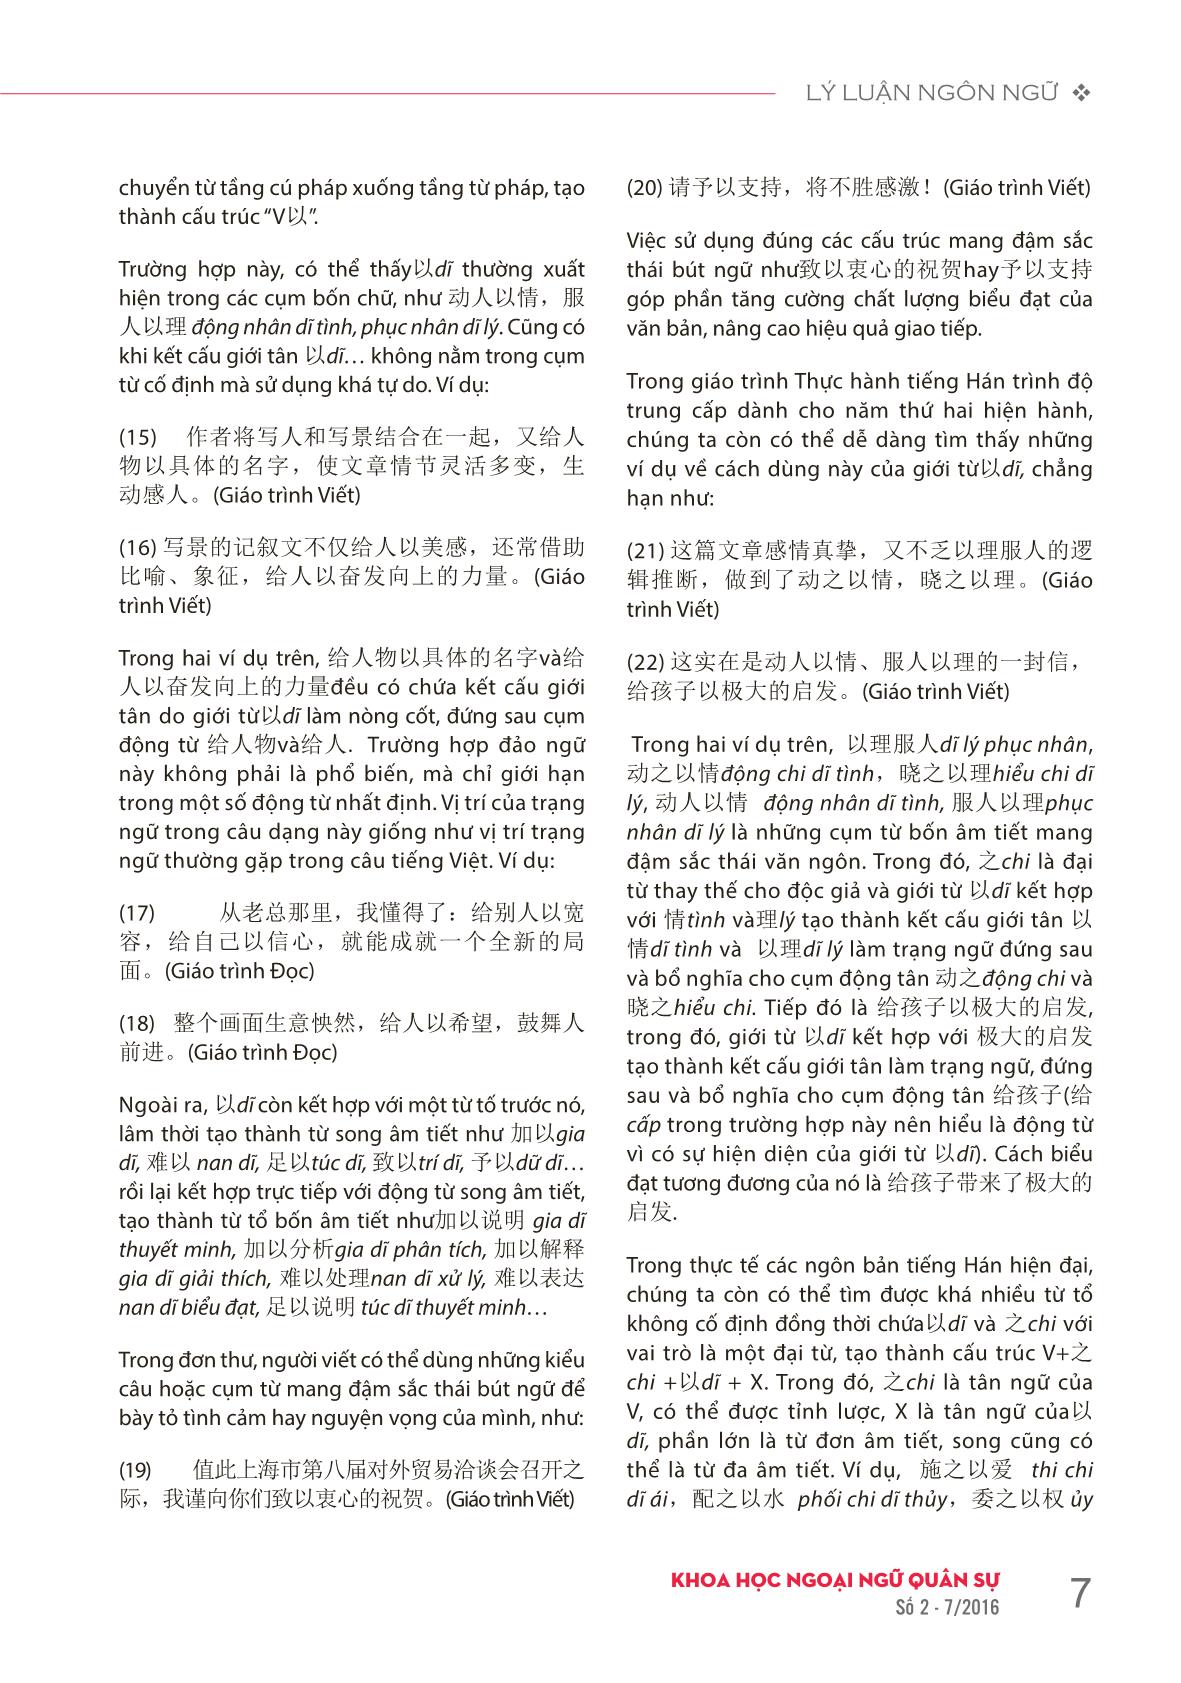 Hư từ 以 dĩ trong tiếng Hán hiện đại và cách biểu đạt tương đương trong tiếng Việt trang 5